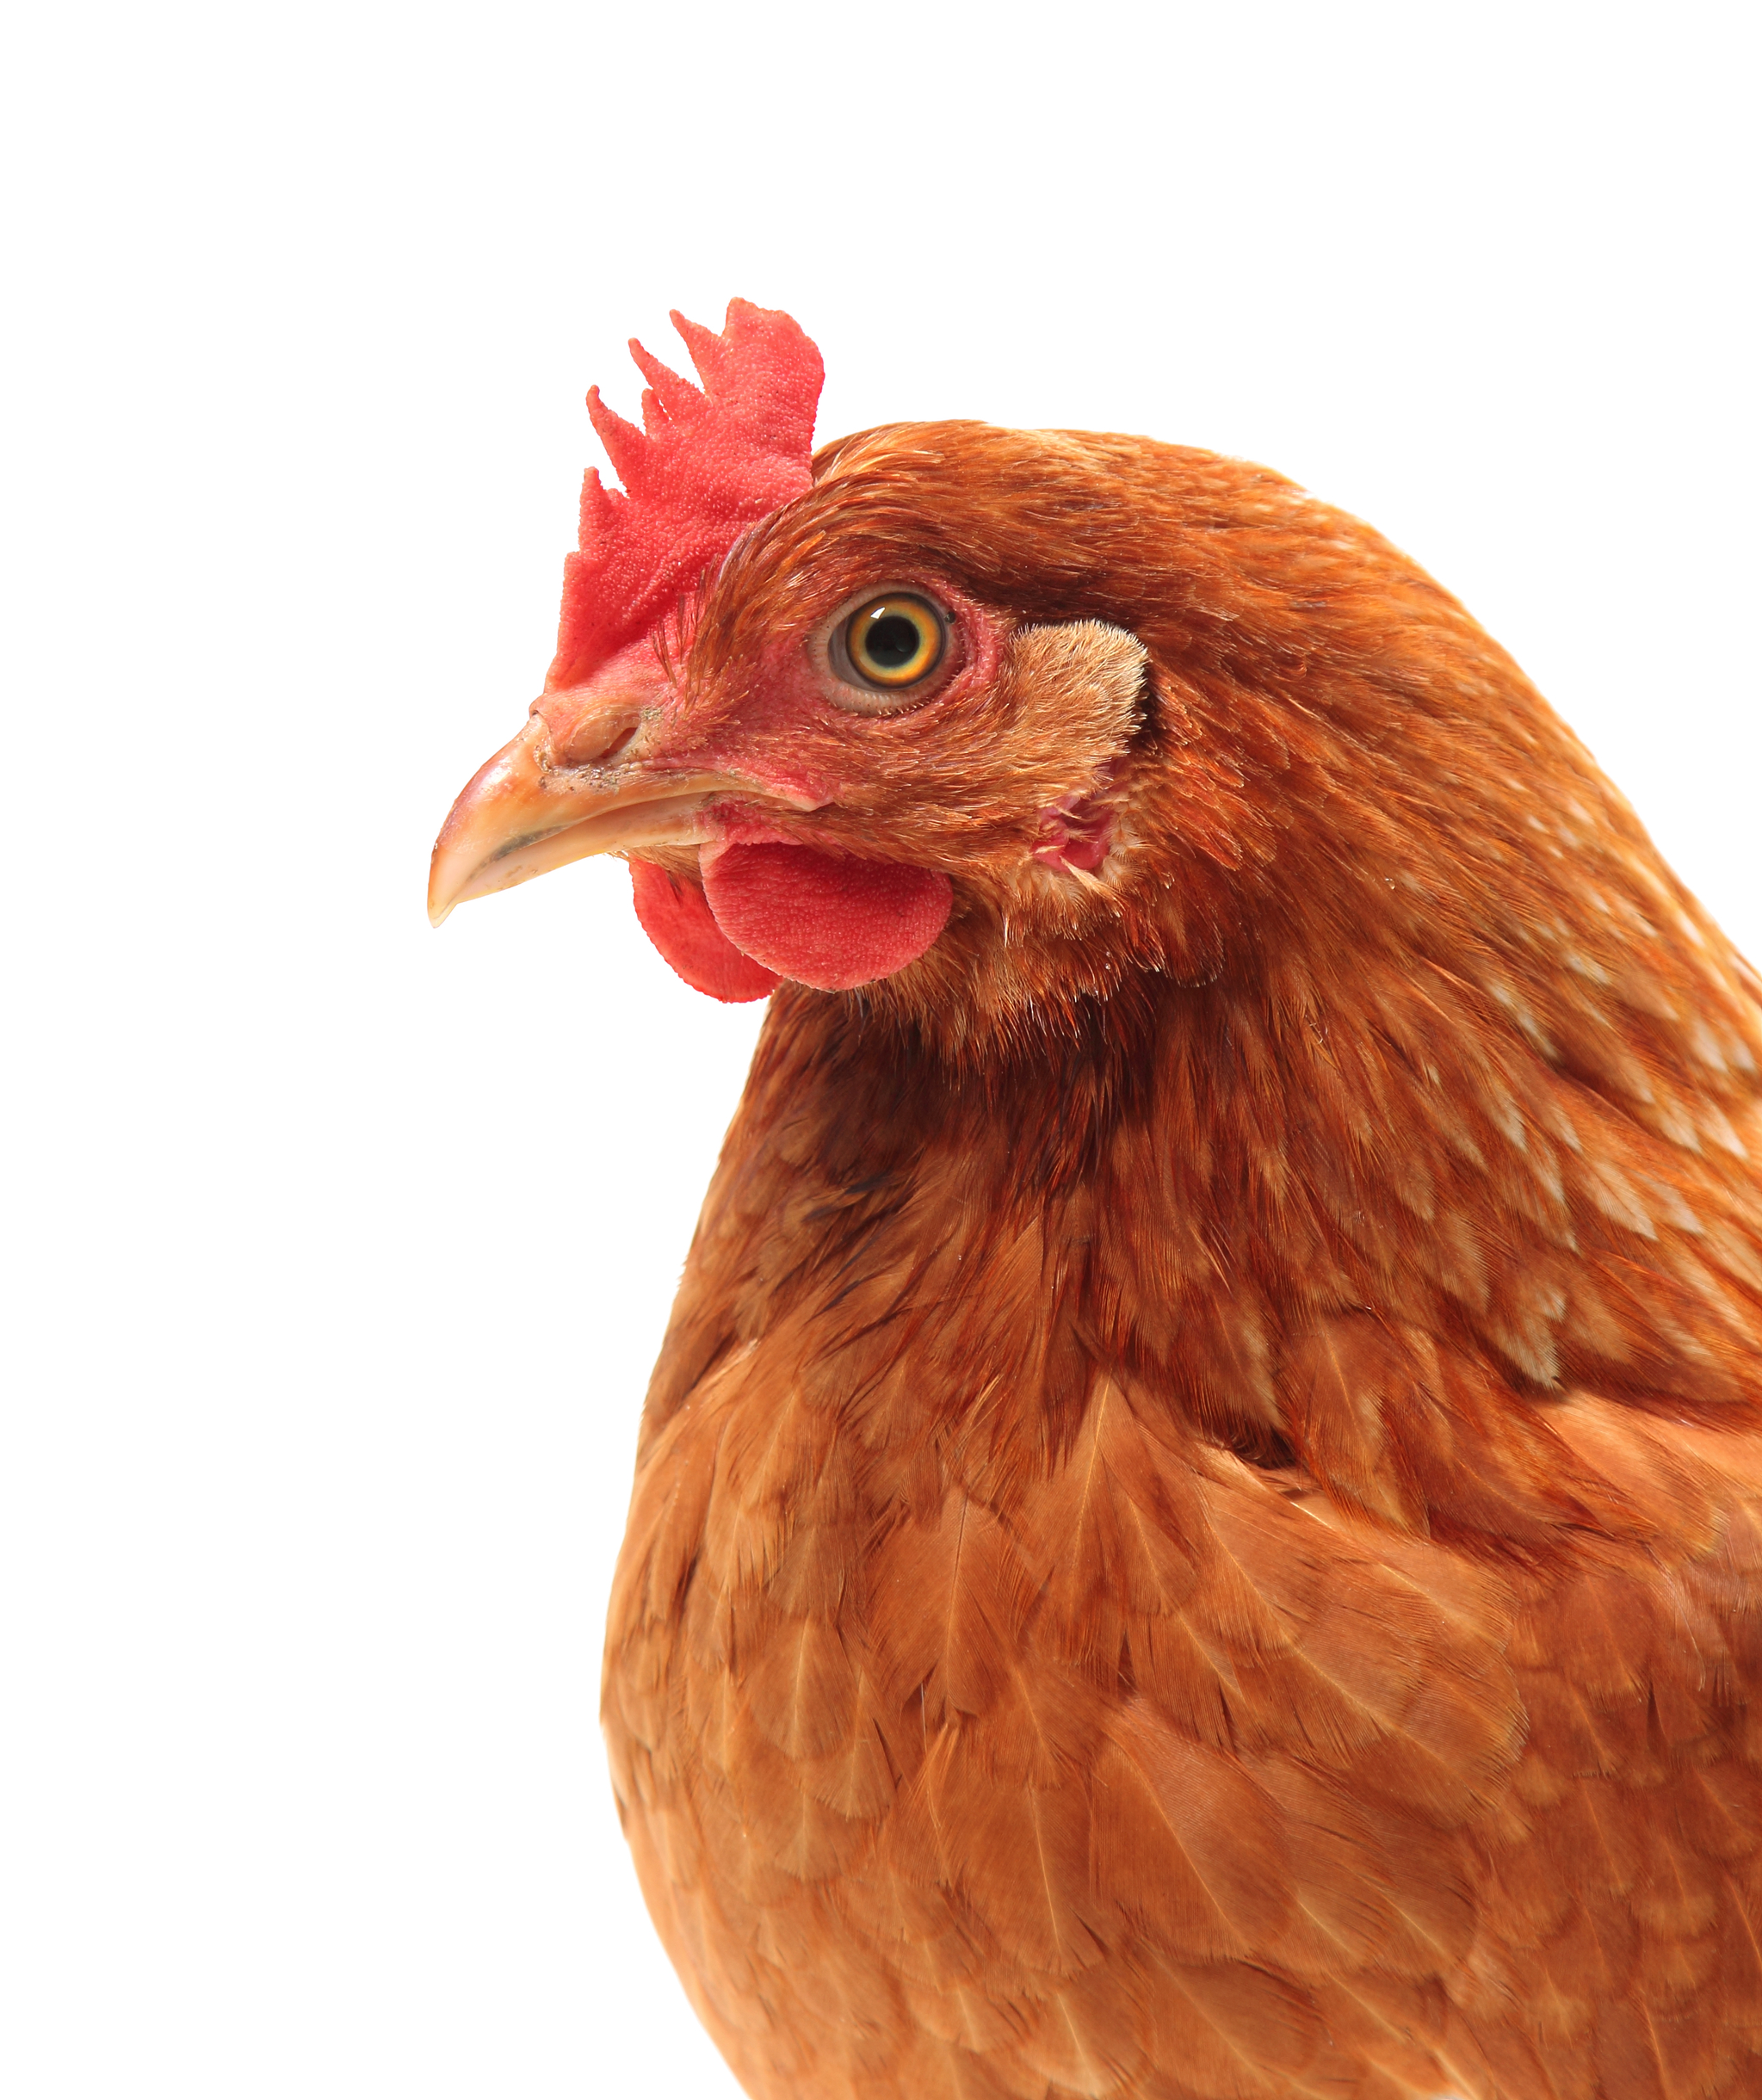 El calor extremo hace perder a un granjero cántabro 5.000 gallinas asfixiadas